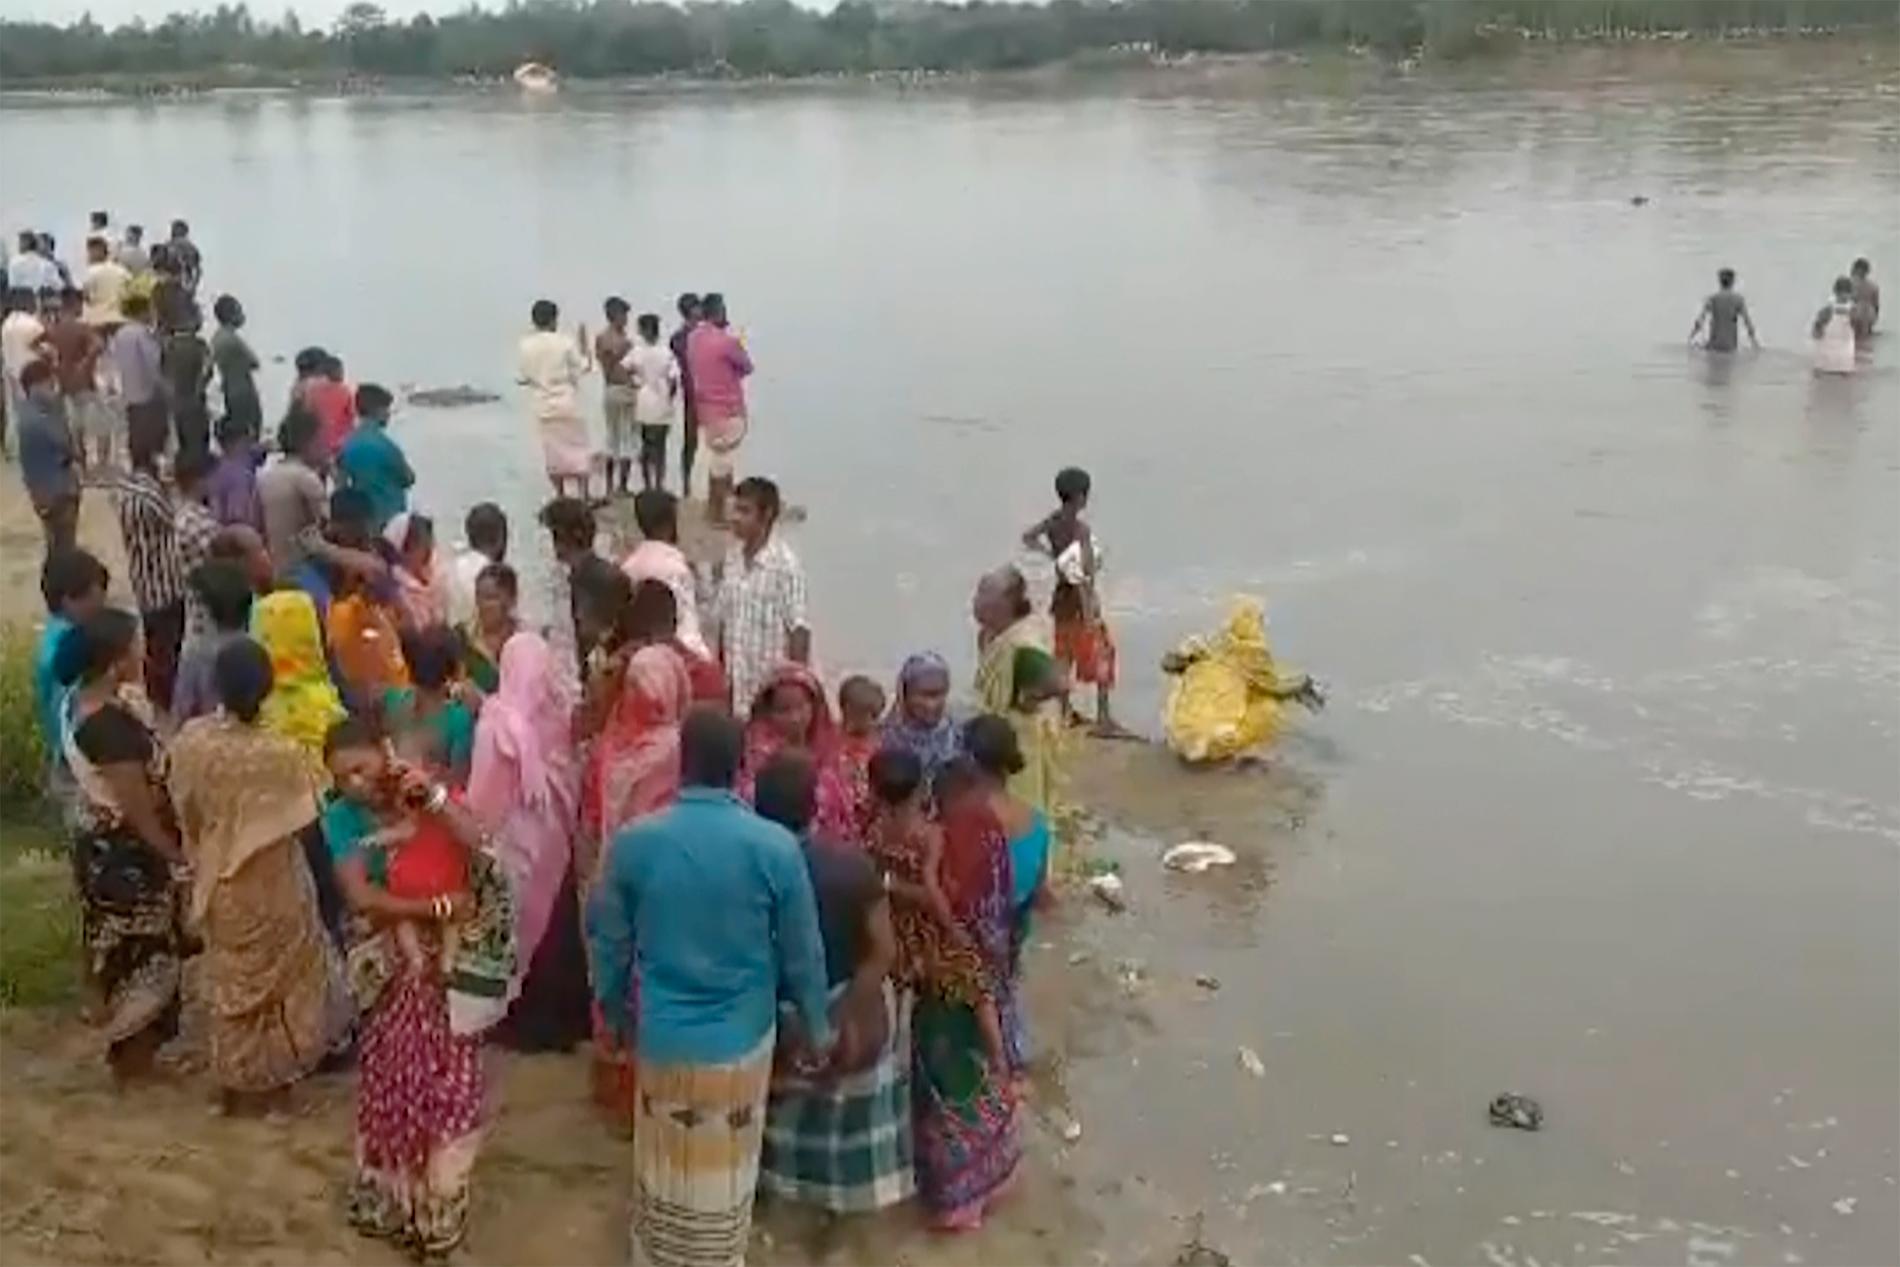 Räddningsarbetet fortsätter efter båtolyckan i norra Bangladesh. Bilden kommer från ett videoklipp.